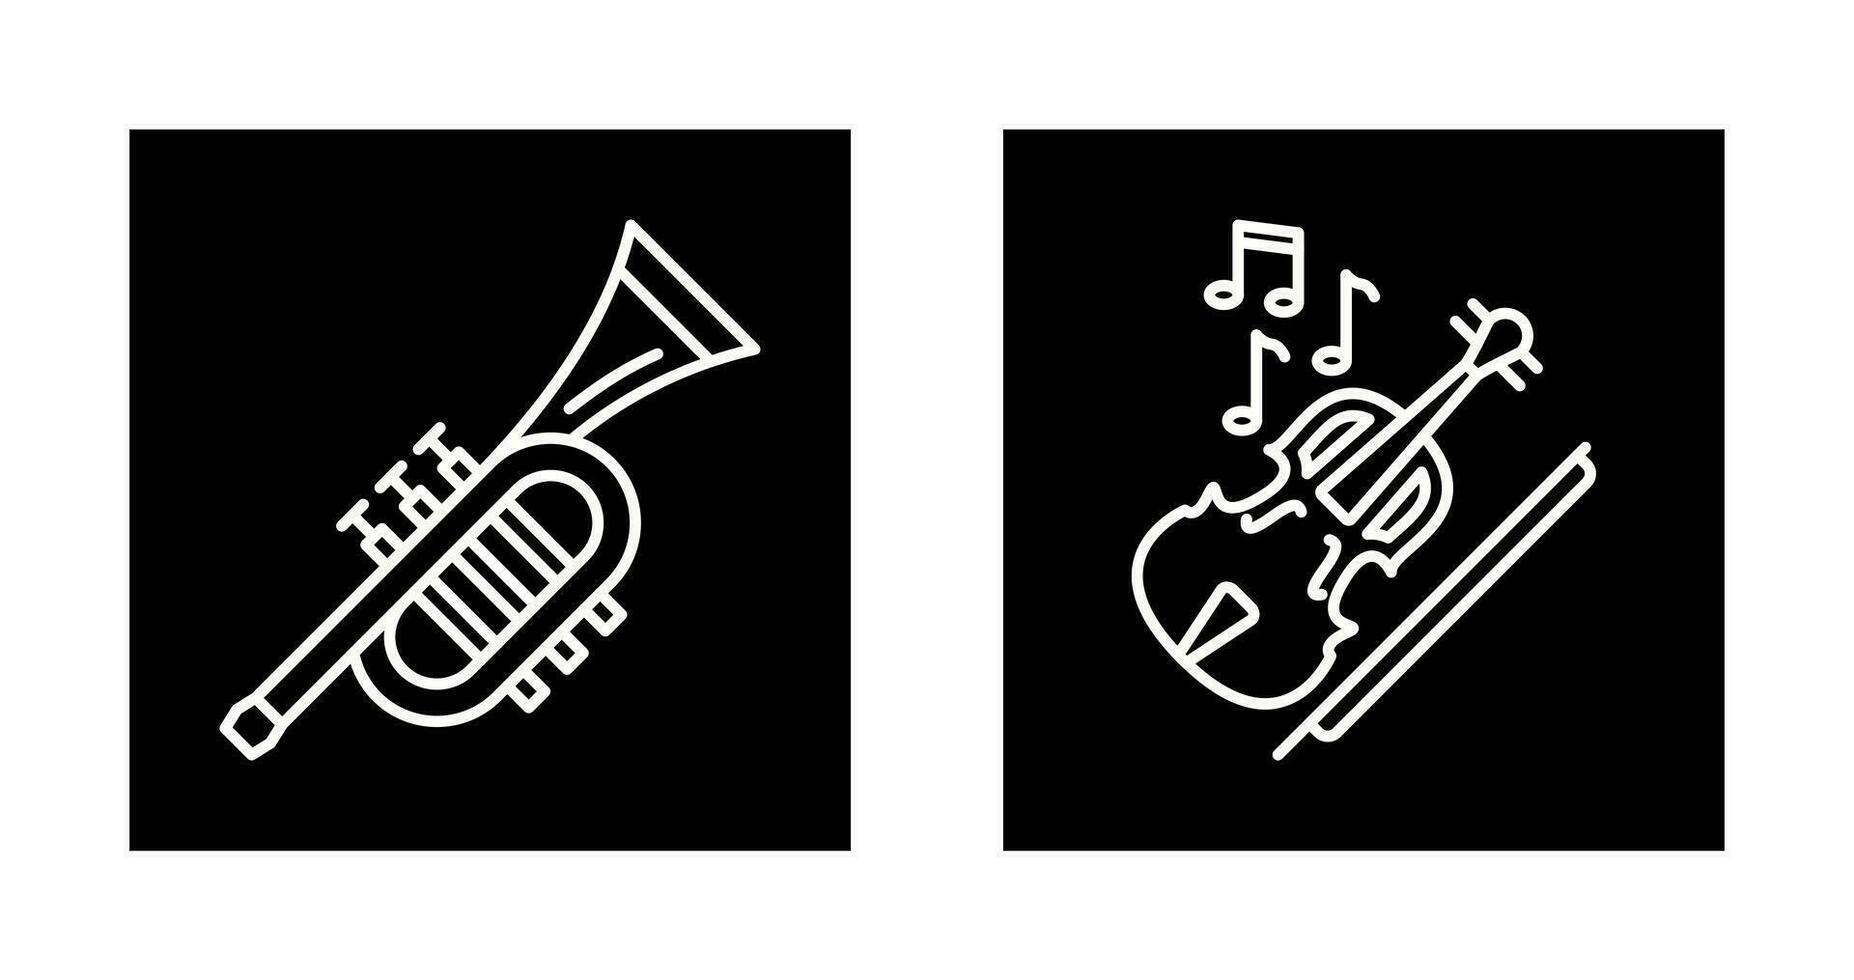 trompeta y violín icono vector